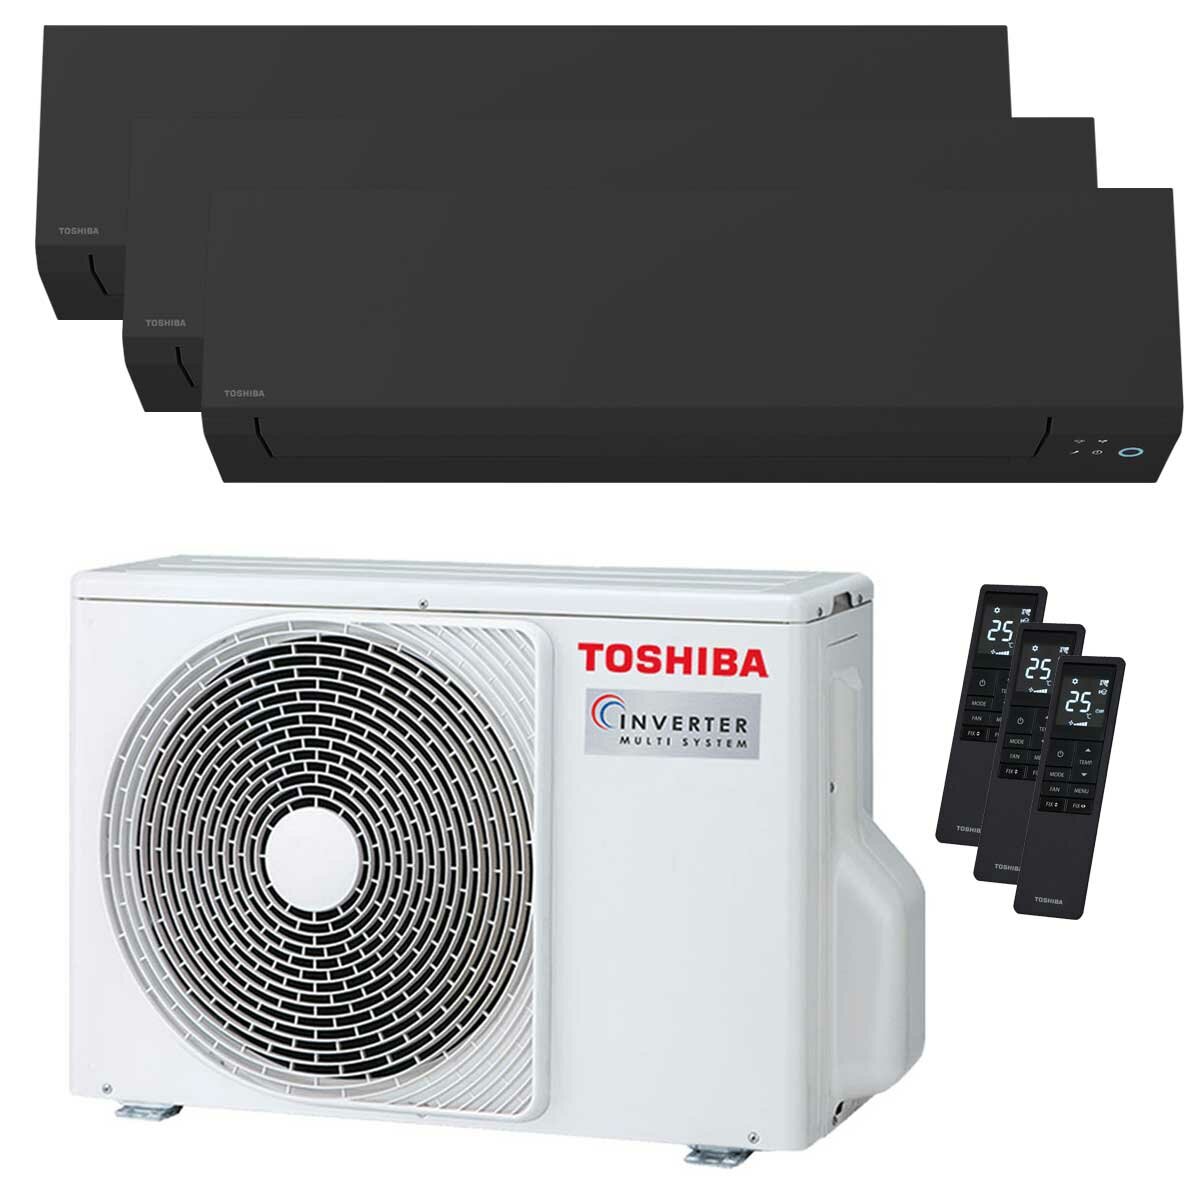 Toshiba SHORAI Edge Black climatiseur trial split 5000+9000+16000 BTU inverseur A+++ unité extérieure wifi 5,2 kW 